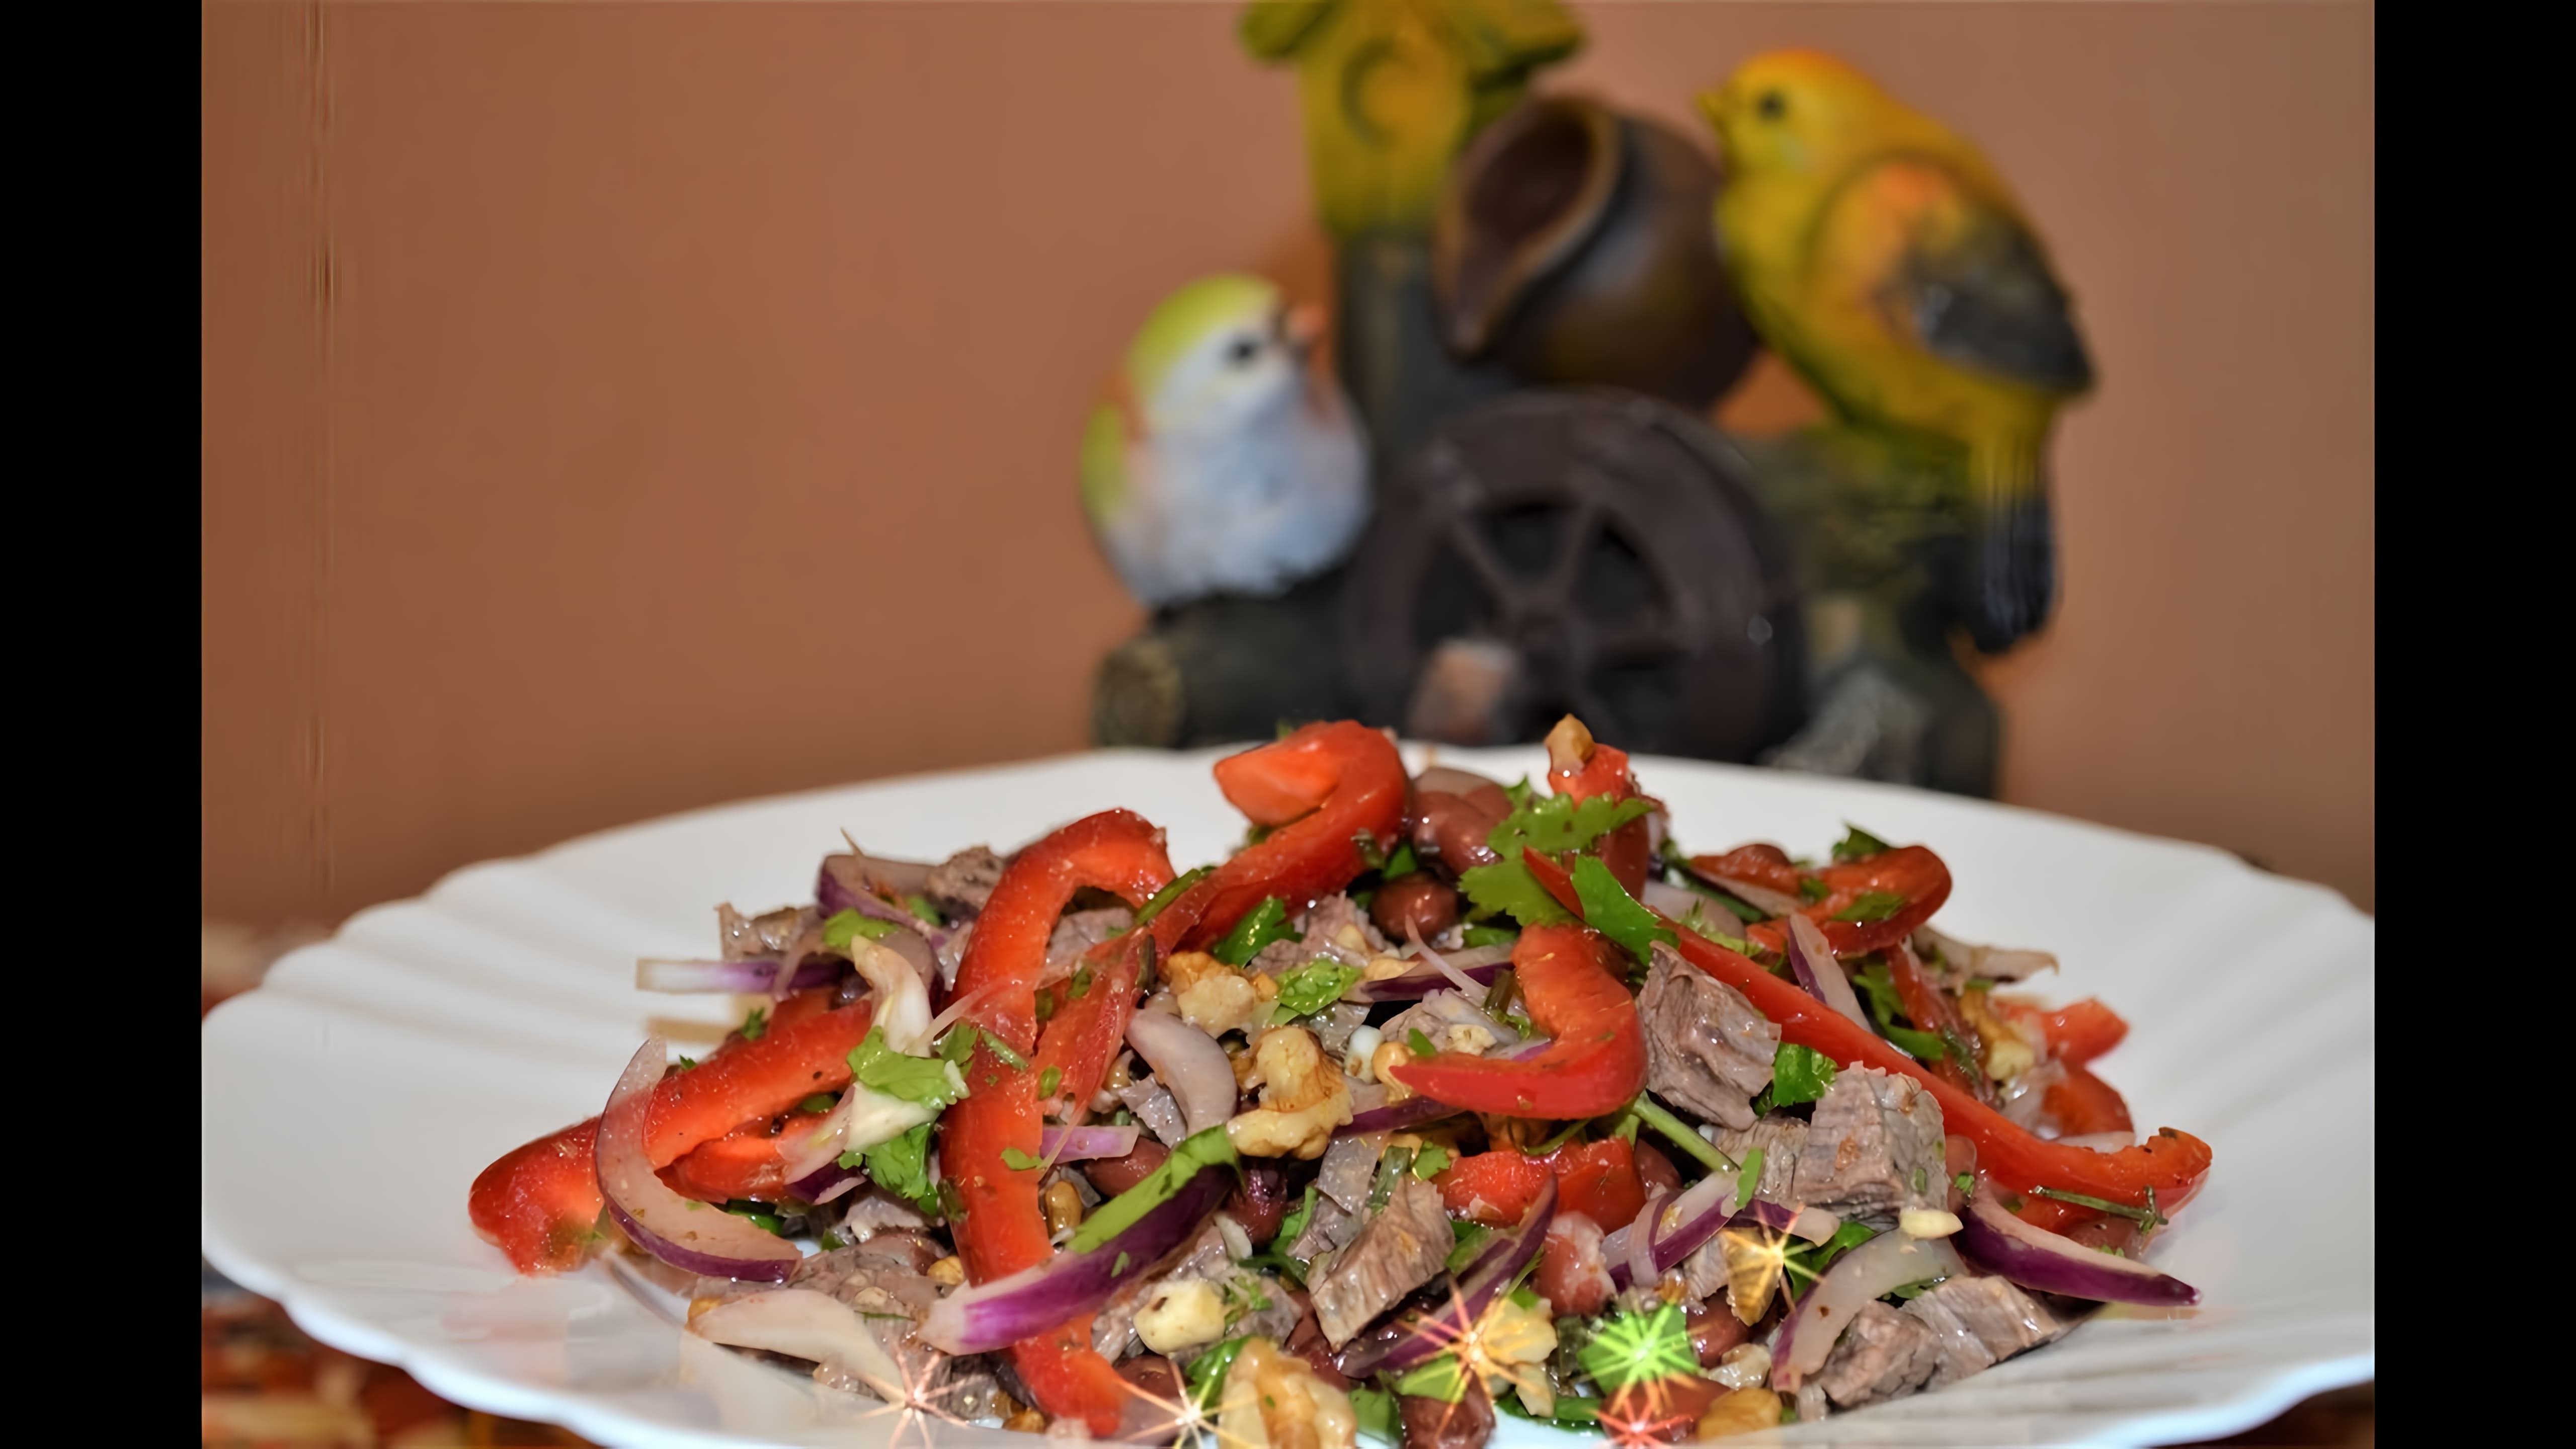 В этом видео демонстрируется рецепт салата "Тбилиси" с красной фасолью и говядиной